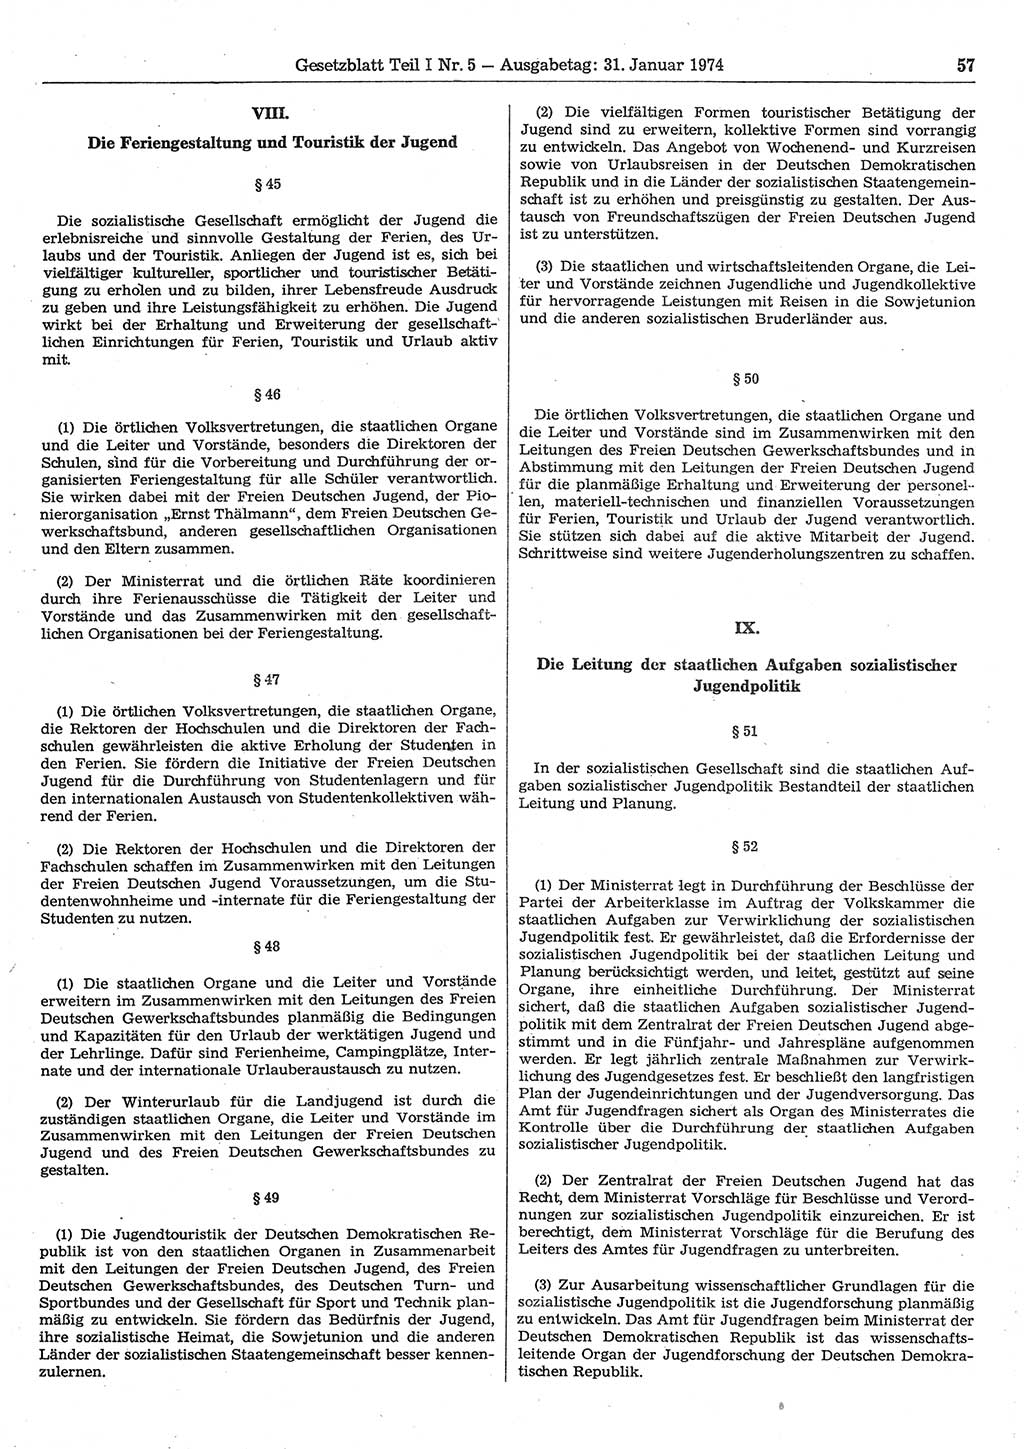 Gesetzblatt (GBl.) der Deutschen Demokratischen Republik (DDR) Teil Ⅰ 1974, Seite 57 (GBl. DDR Ⅰ 1974, S. 57)